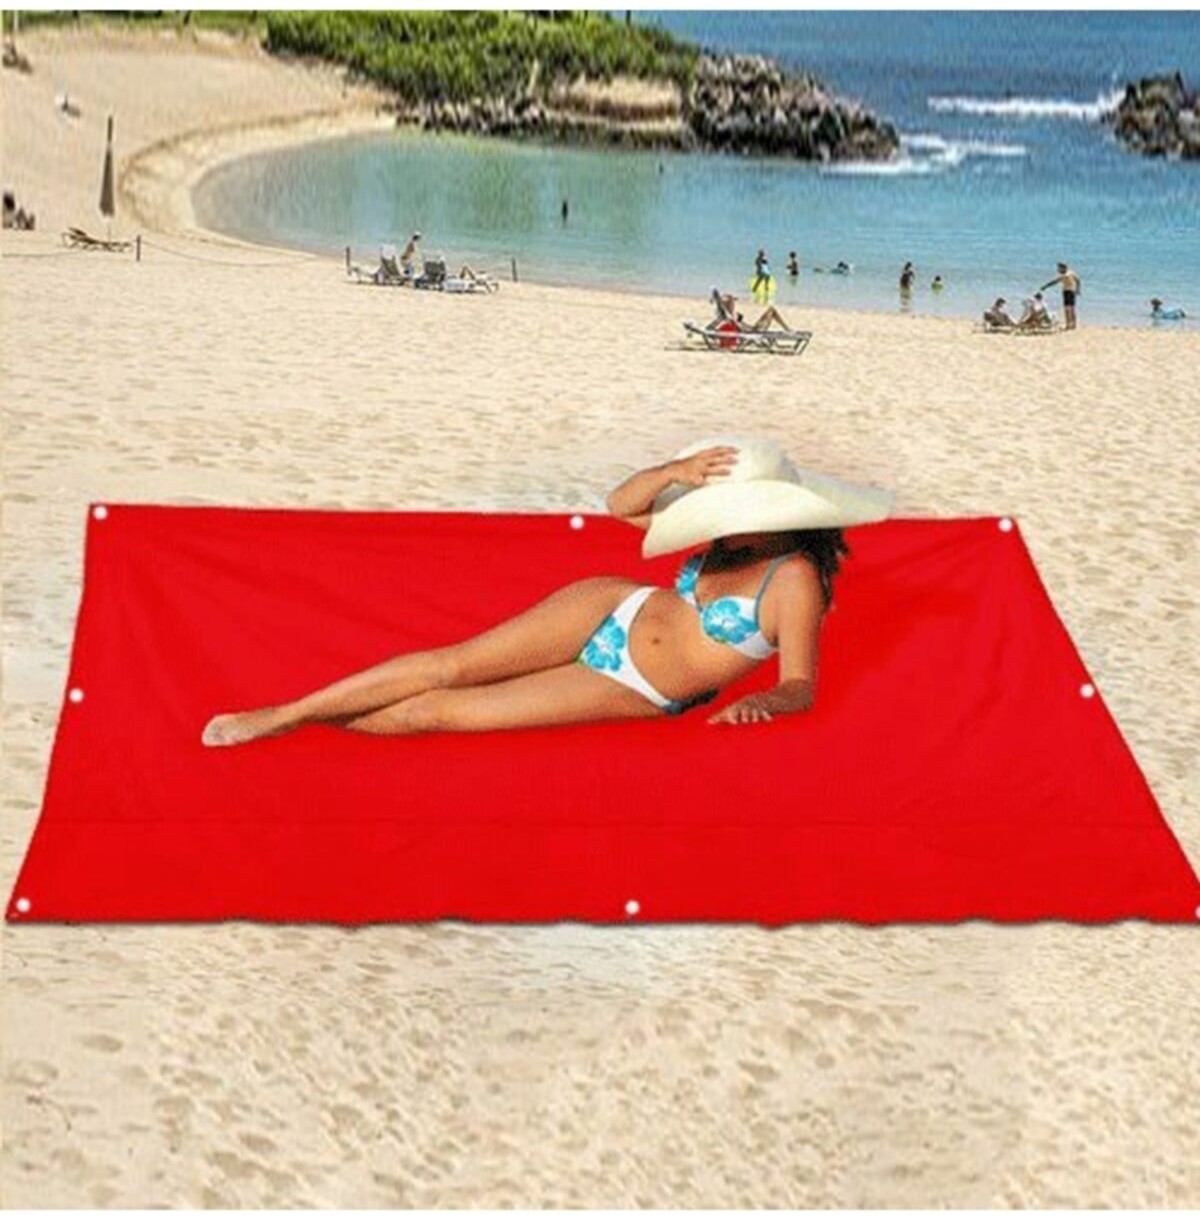 CLZ174 Katlanır Kamp Çadırı Gölgelik Güneşlik Tente Branda Piknik Örtüsü Kamp Çadır Plaj Yer Matı - Kırmızı